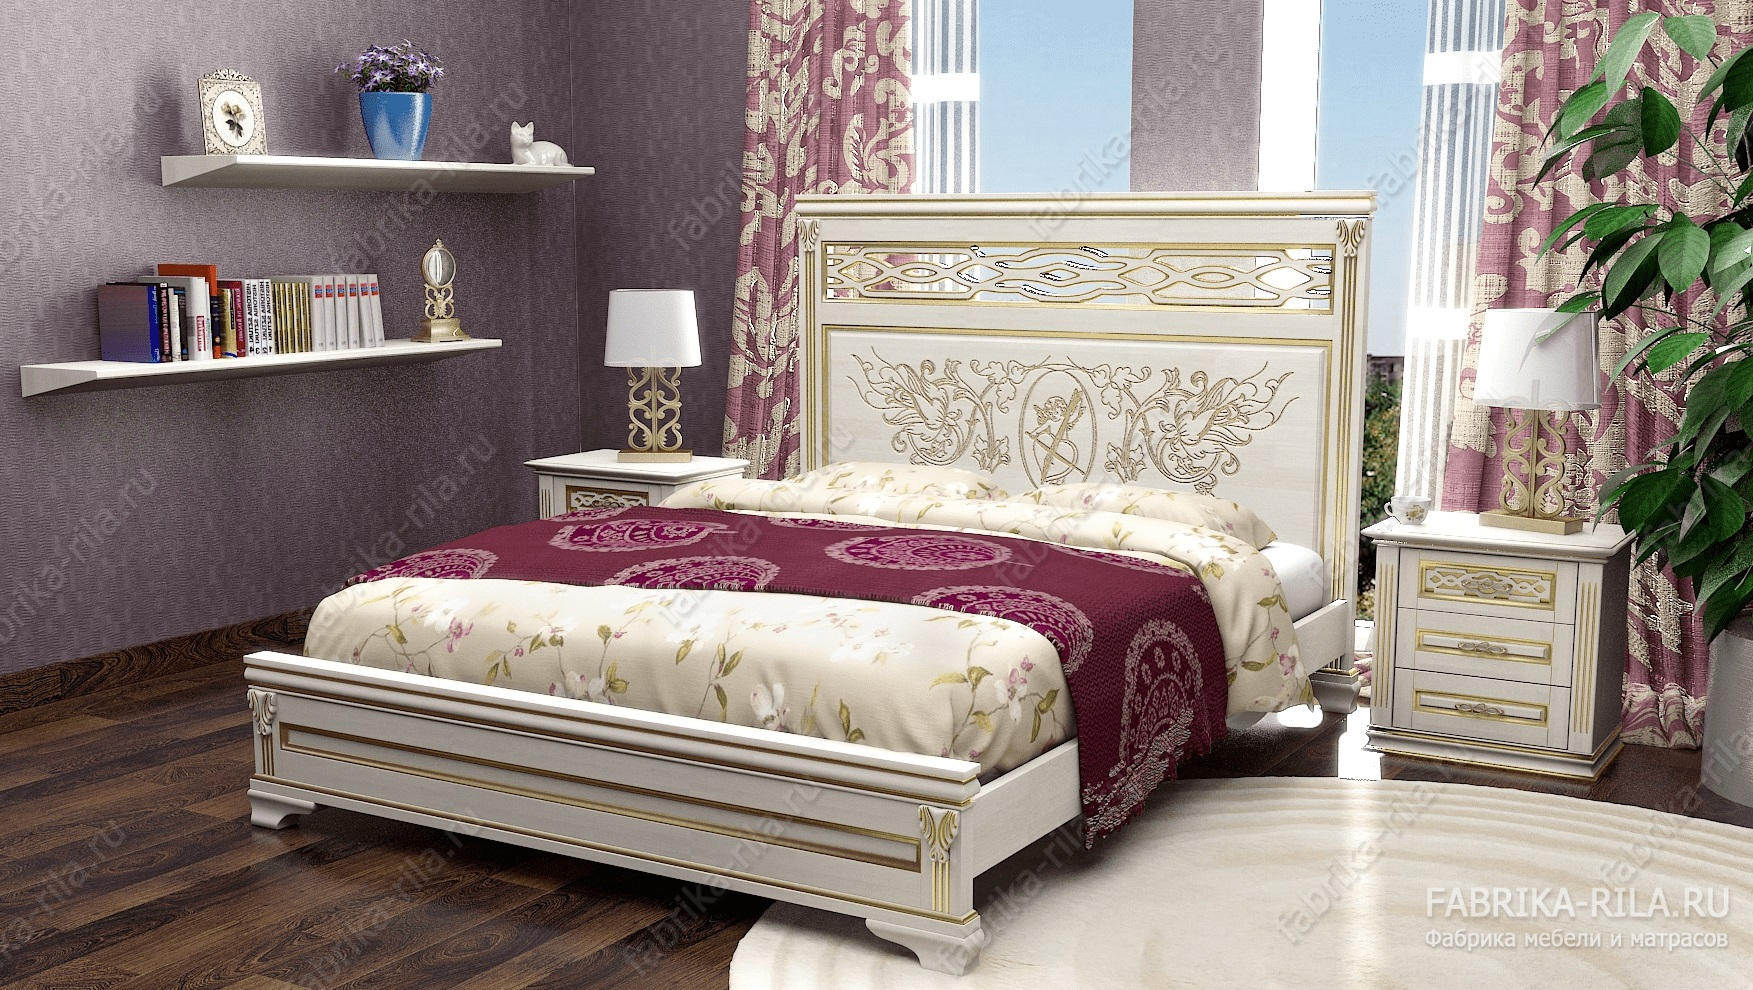 Кровать Lirоna 3 — 120x190 см. из сосны